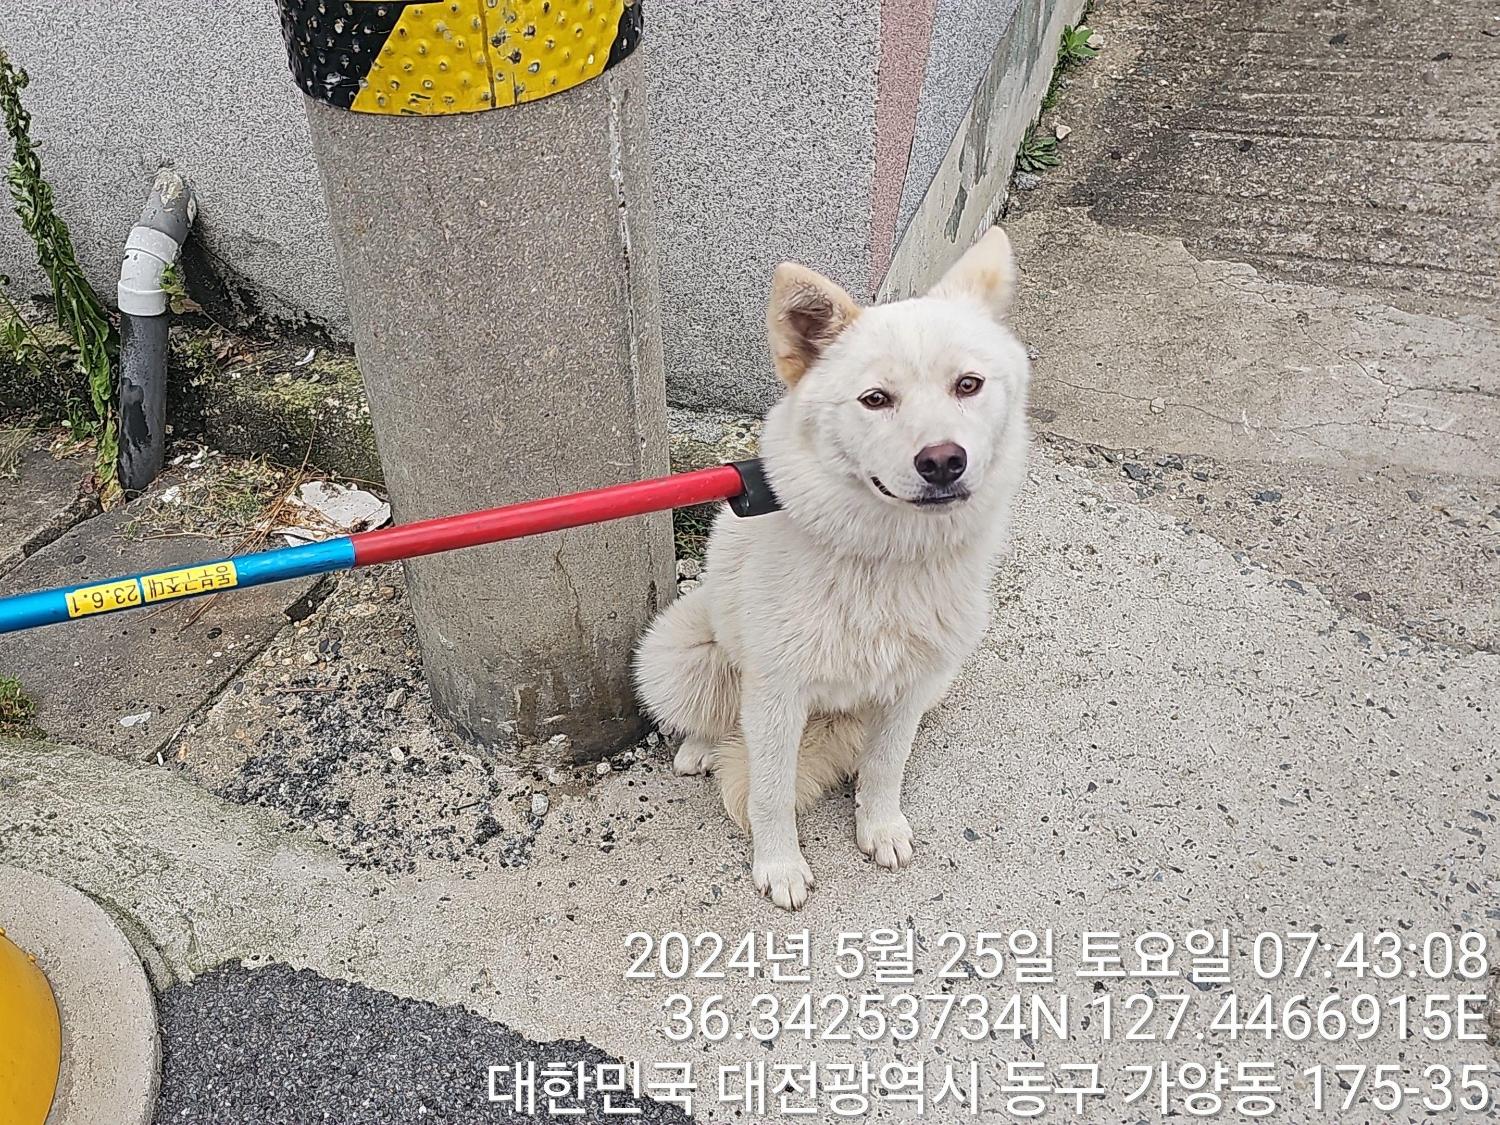 공고 번호가 대전-동구-2024-00142인 믹스견 동물 사진